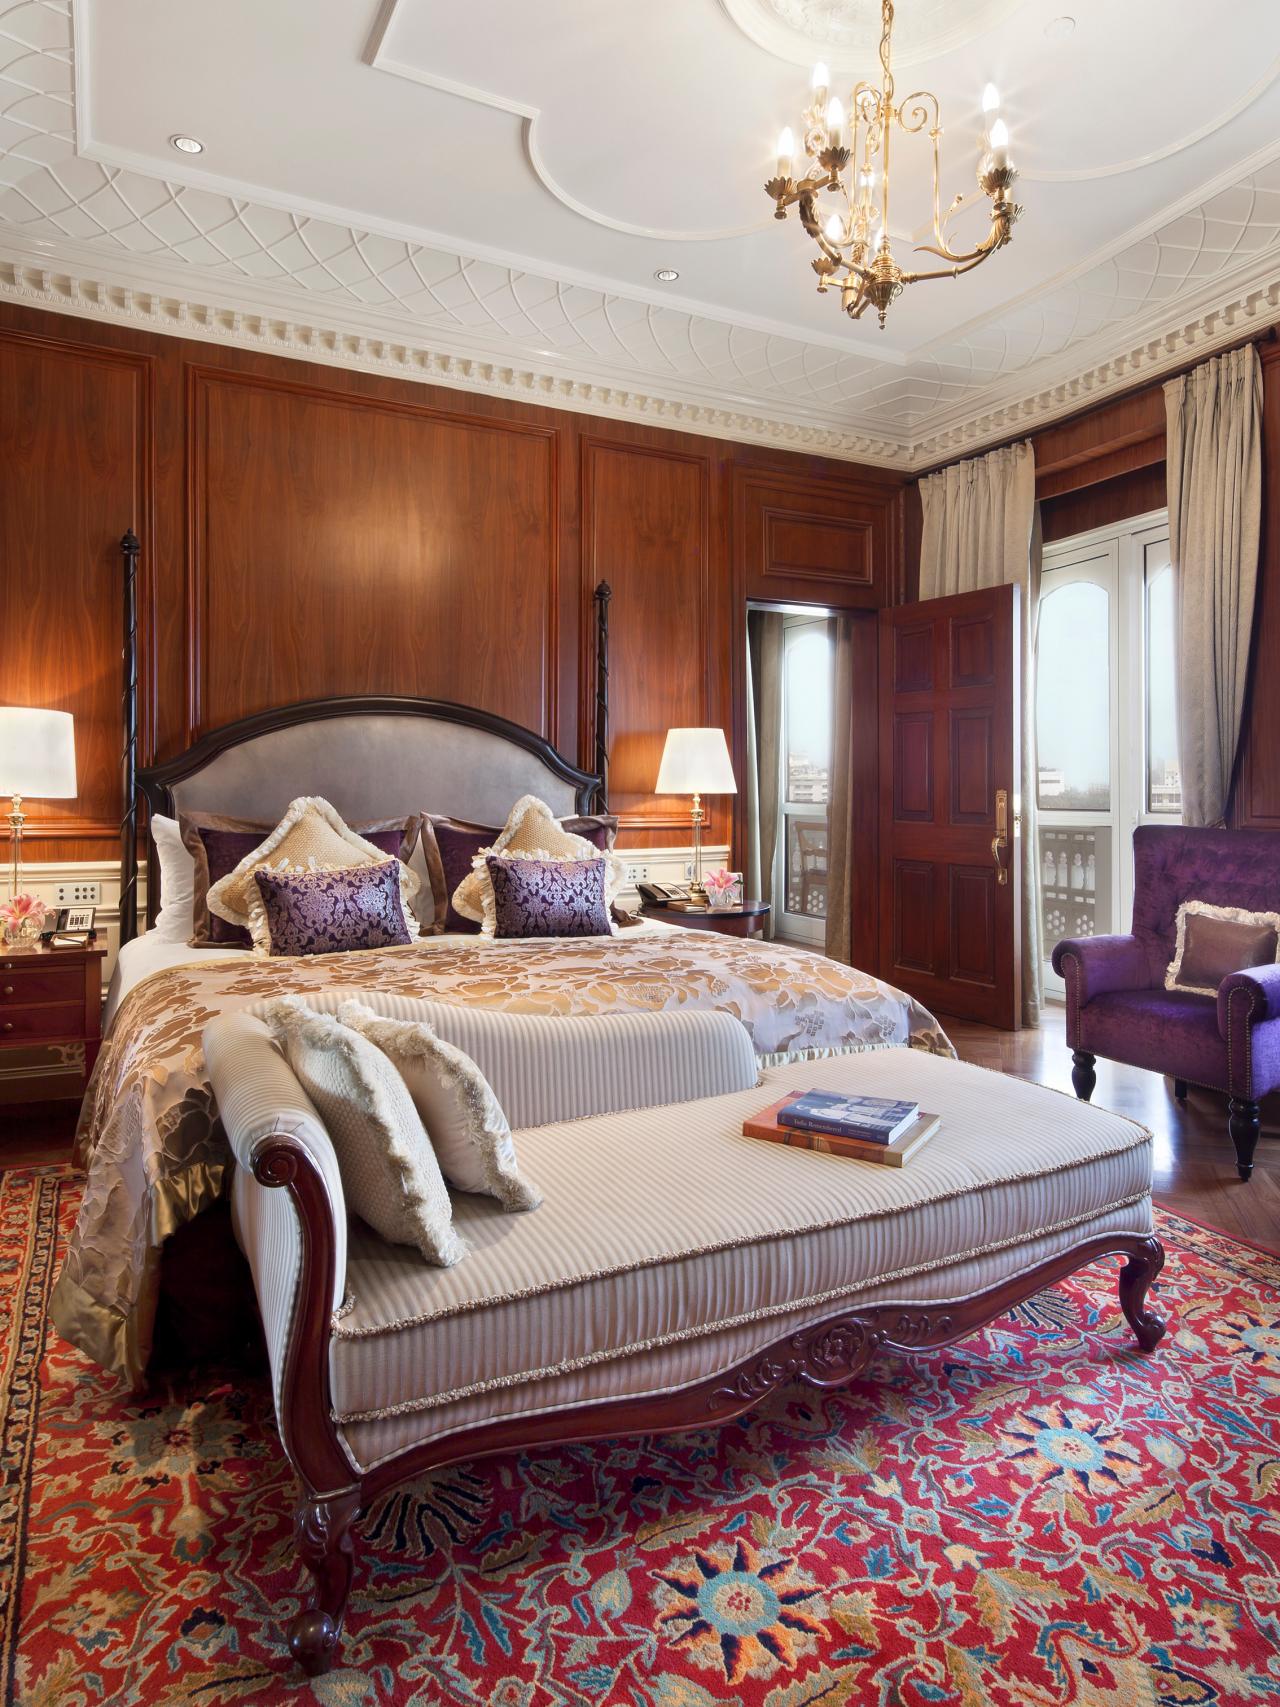 tête de lit moderne luxe chambre design d'intérieur originale ci taj style indien moderne canapé pourpre lampe or